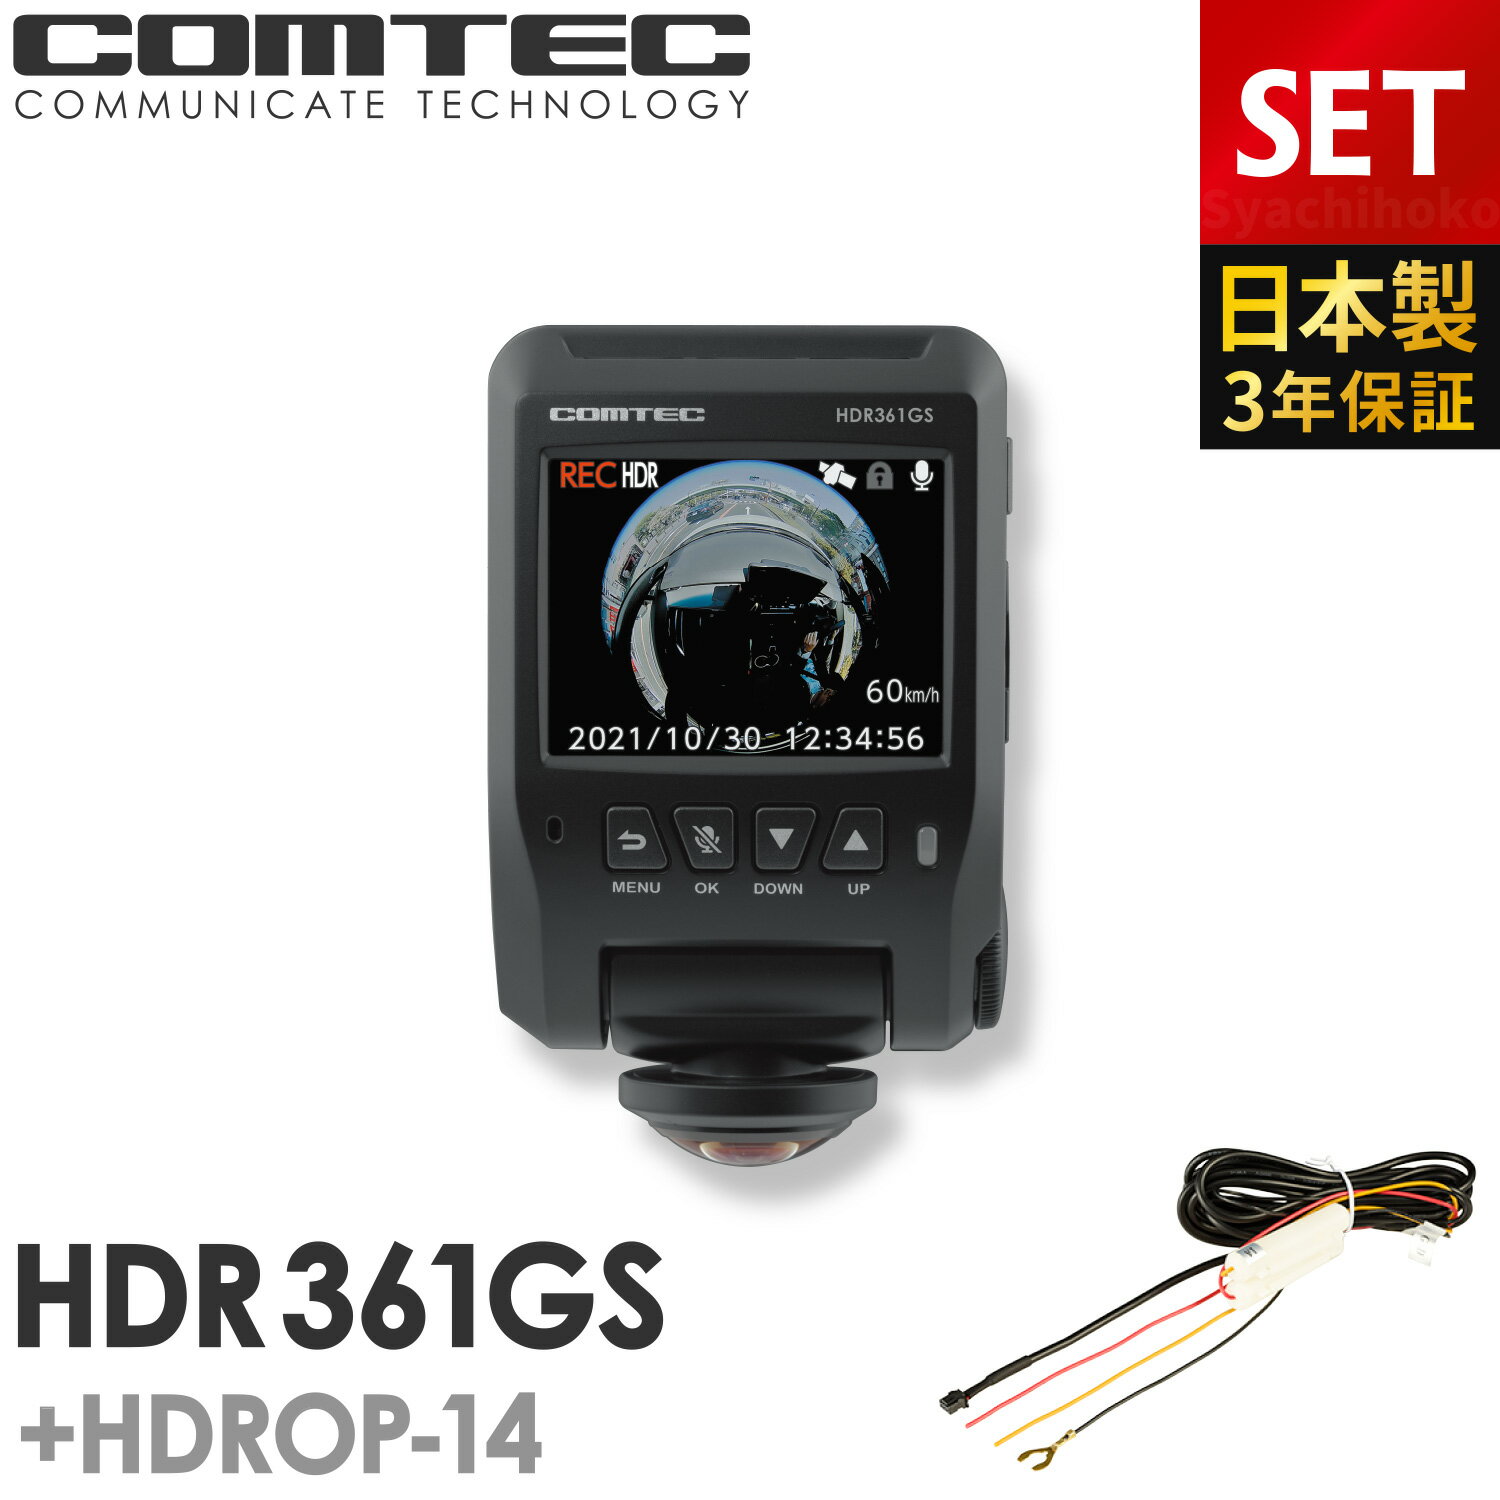 ドライブレコーダー 日本製 3年保証 360度カメラ コムテック HDR361GS HDROP-14 駐車監視コードセット 前後左右 全方位記録 ノイズ対策済 常時 衝撃録画 GPS搭載 駐車監視対応 2.4インチ液晶 ドラレコ